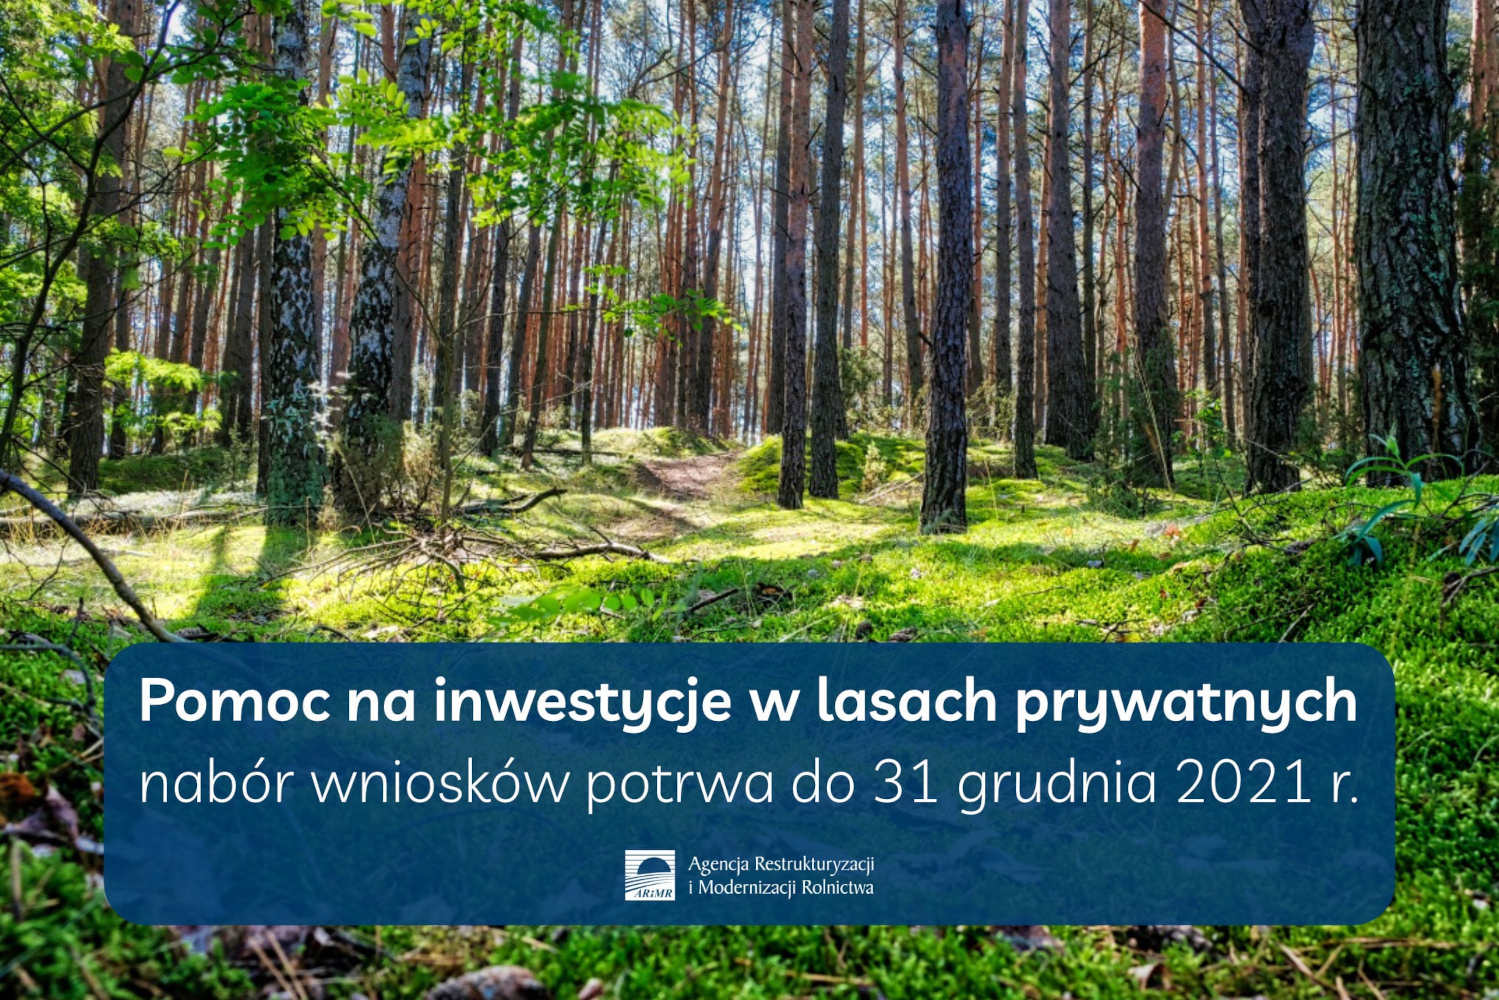 Rusza pomoc na inwestycje w lasach prywatnych - informacja prasowa